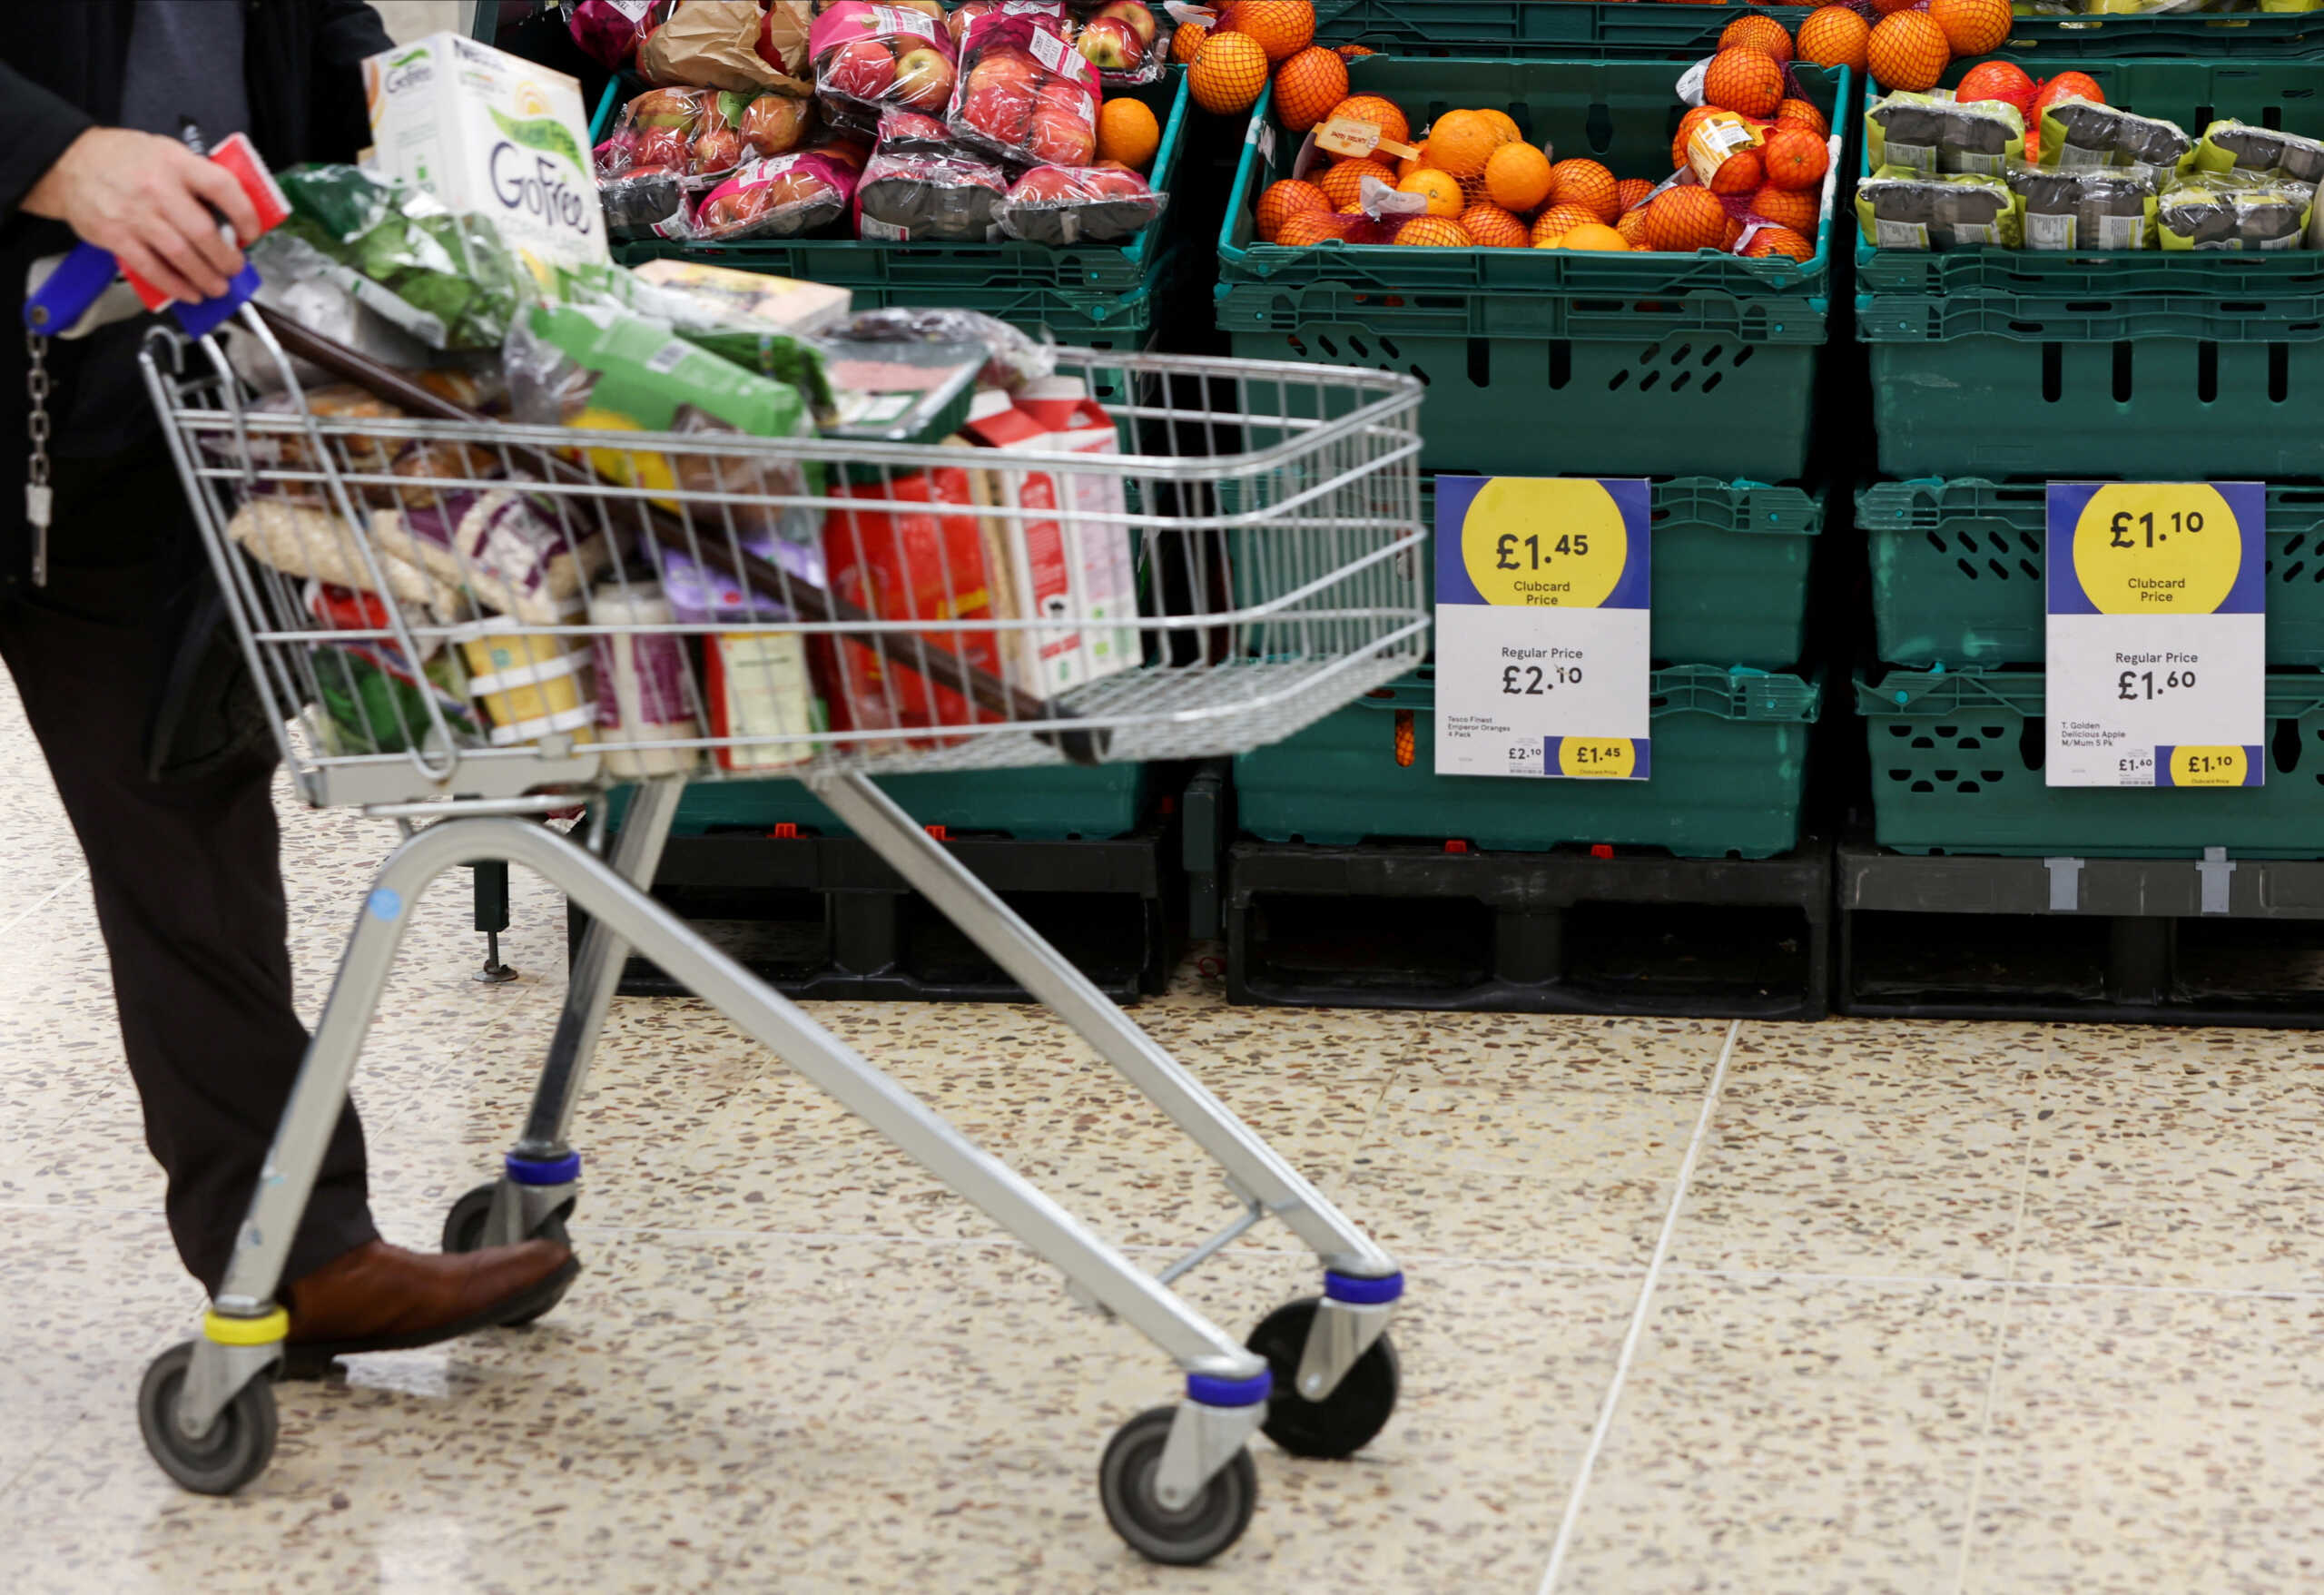 Βρετανία: 1 στους 7 αντιμετώπισε πείνα το 2022 επειδή δεν είχε χρήματα να αγοράσει τρόφιμα